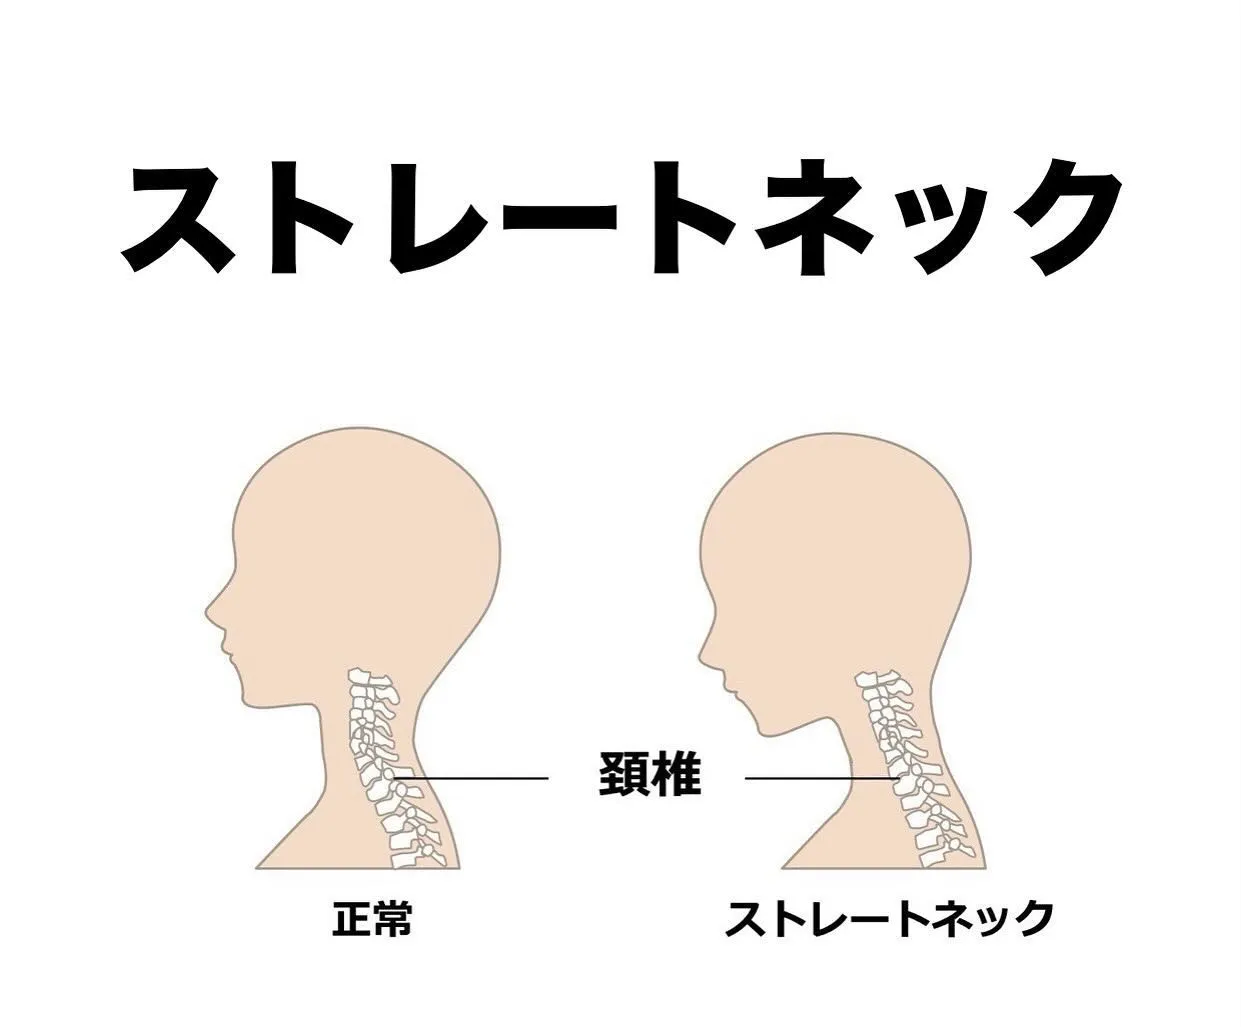 ストレートネックでは、持続的な頭部の前方突出によって上位頚椎...